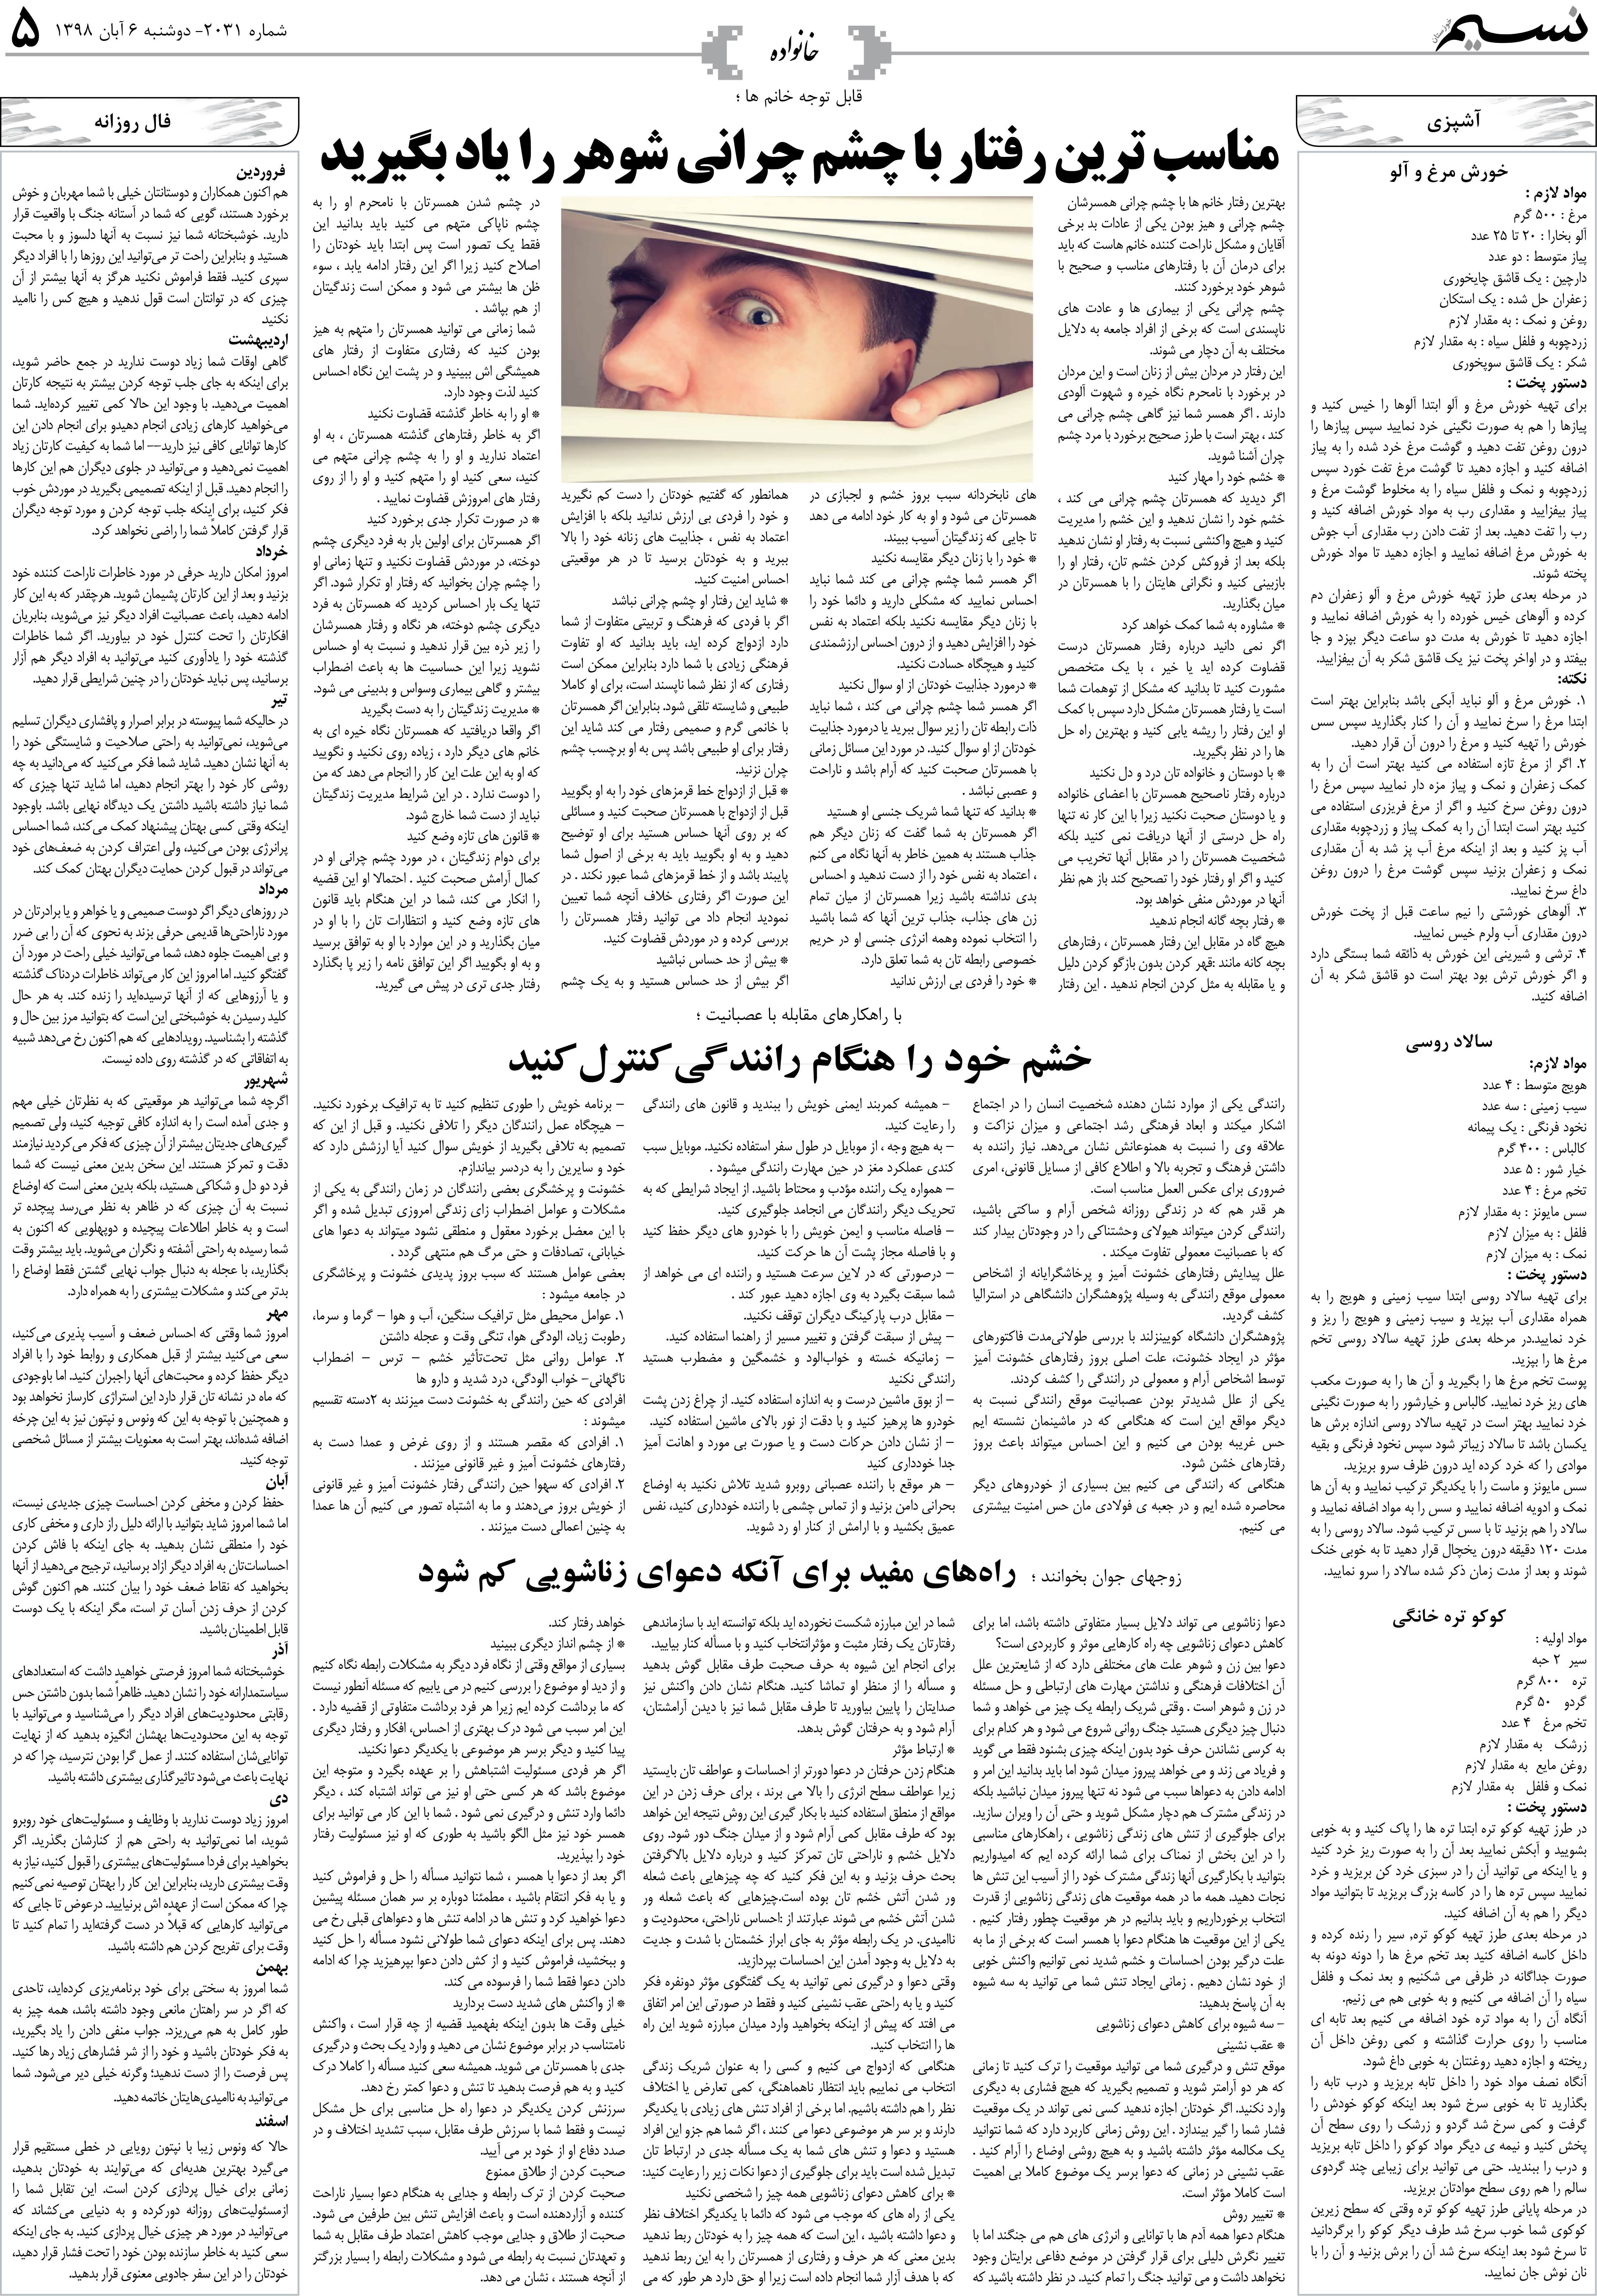 صفحه خانواده روزنامه نسیم شماره 2031